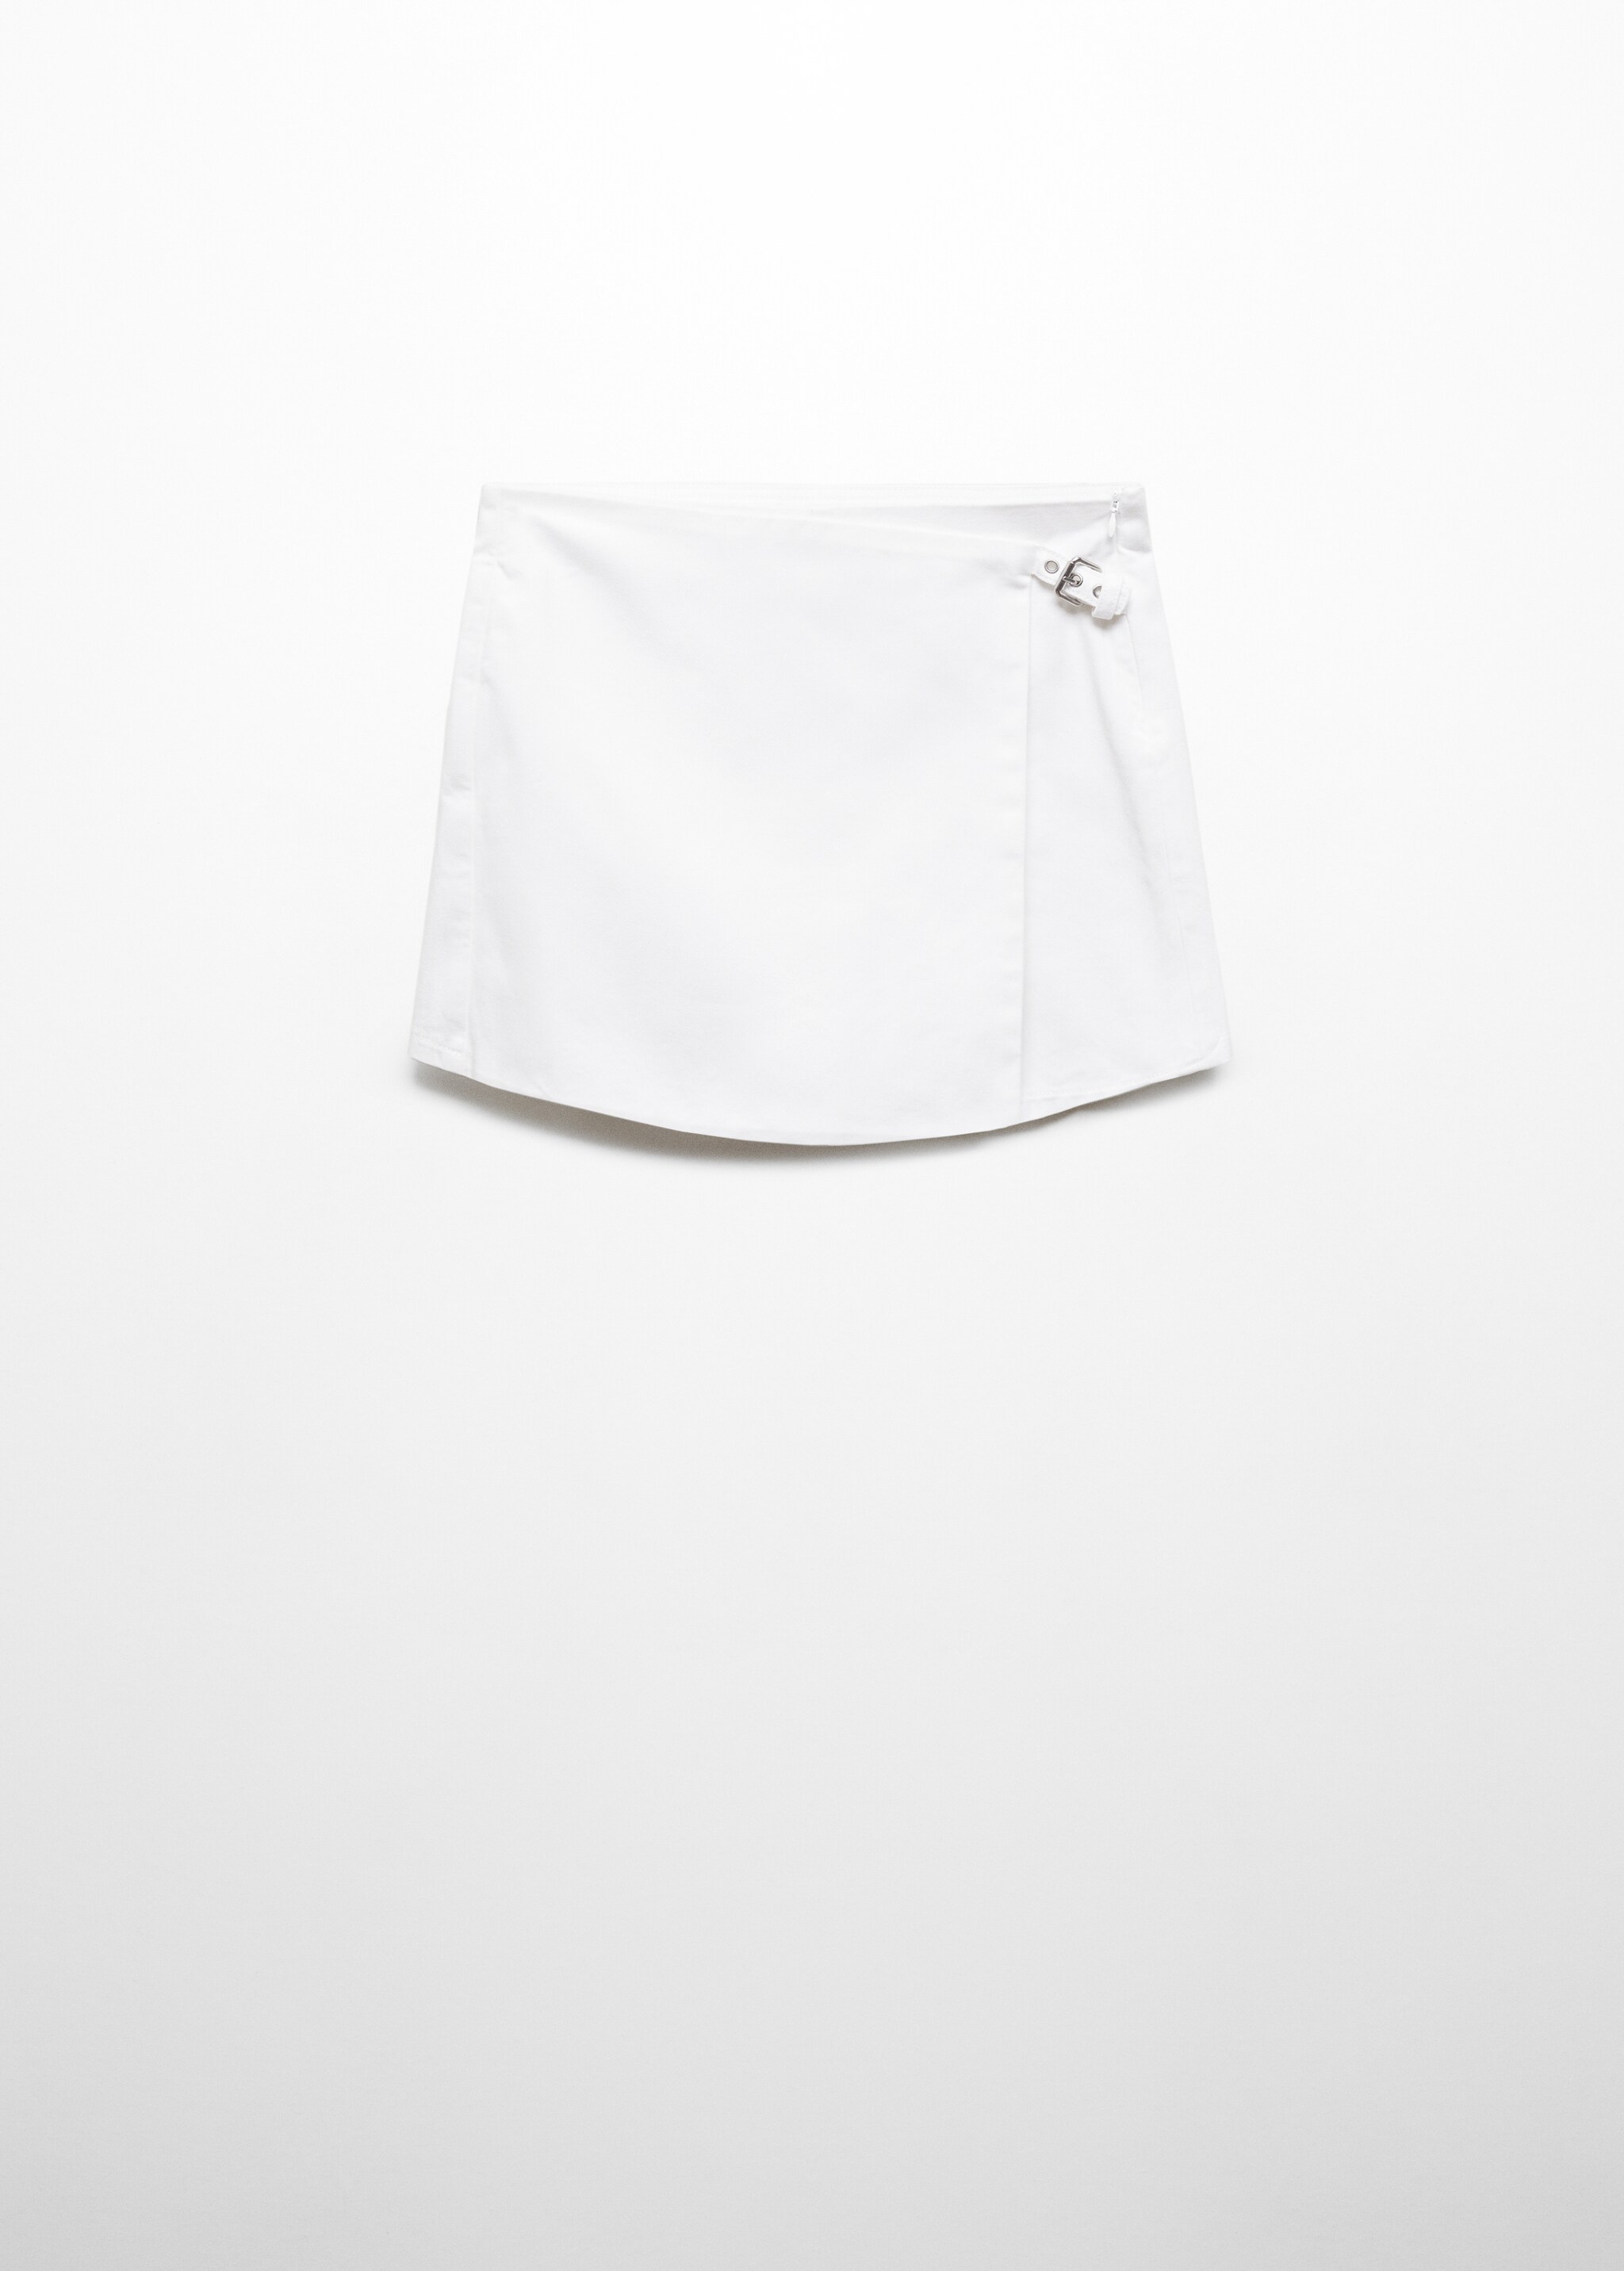 Falda pantalón hebilla - Artículo sin modelo